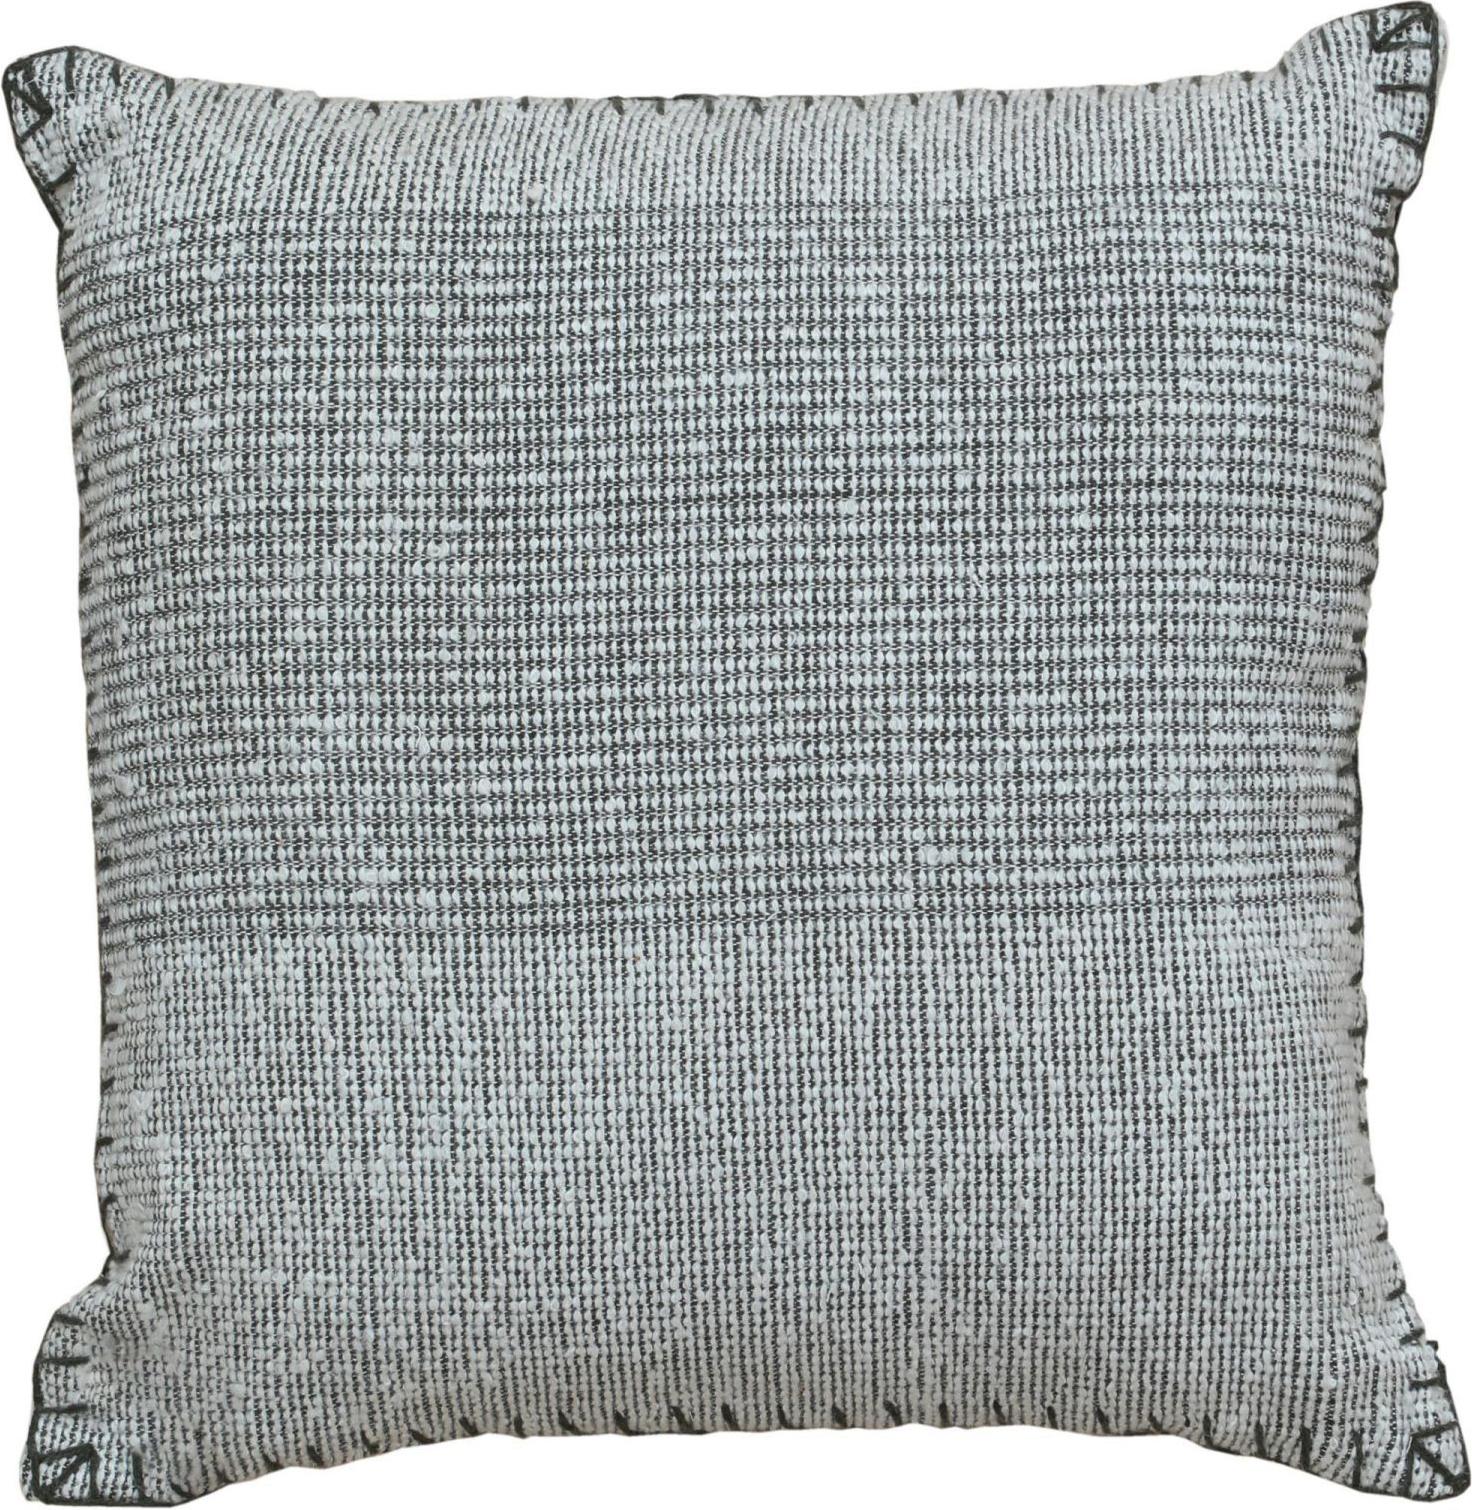 Rehaussez le look de votre maison avec un oreiller moderne chic en laine et coton, méticuleusement fabriqué à la main avec des matériaux opulents, dans une taille de 20